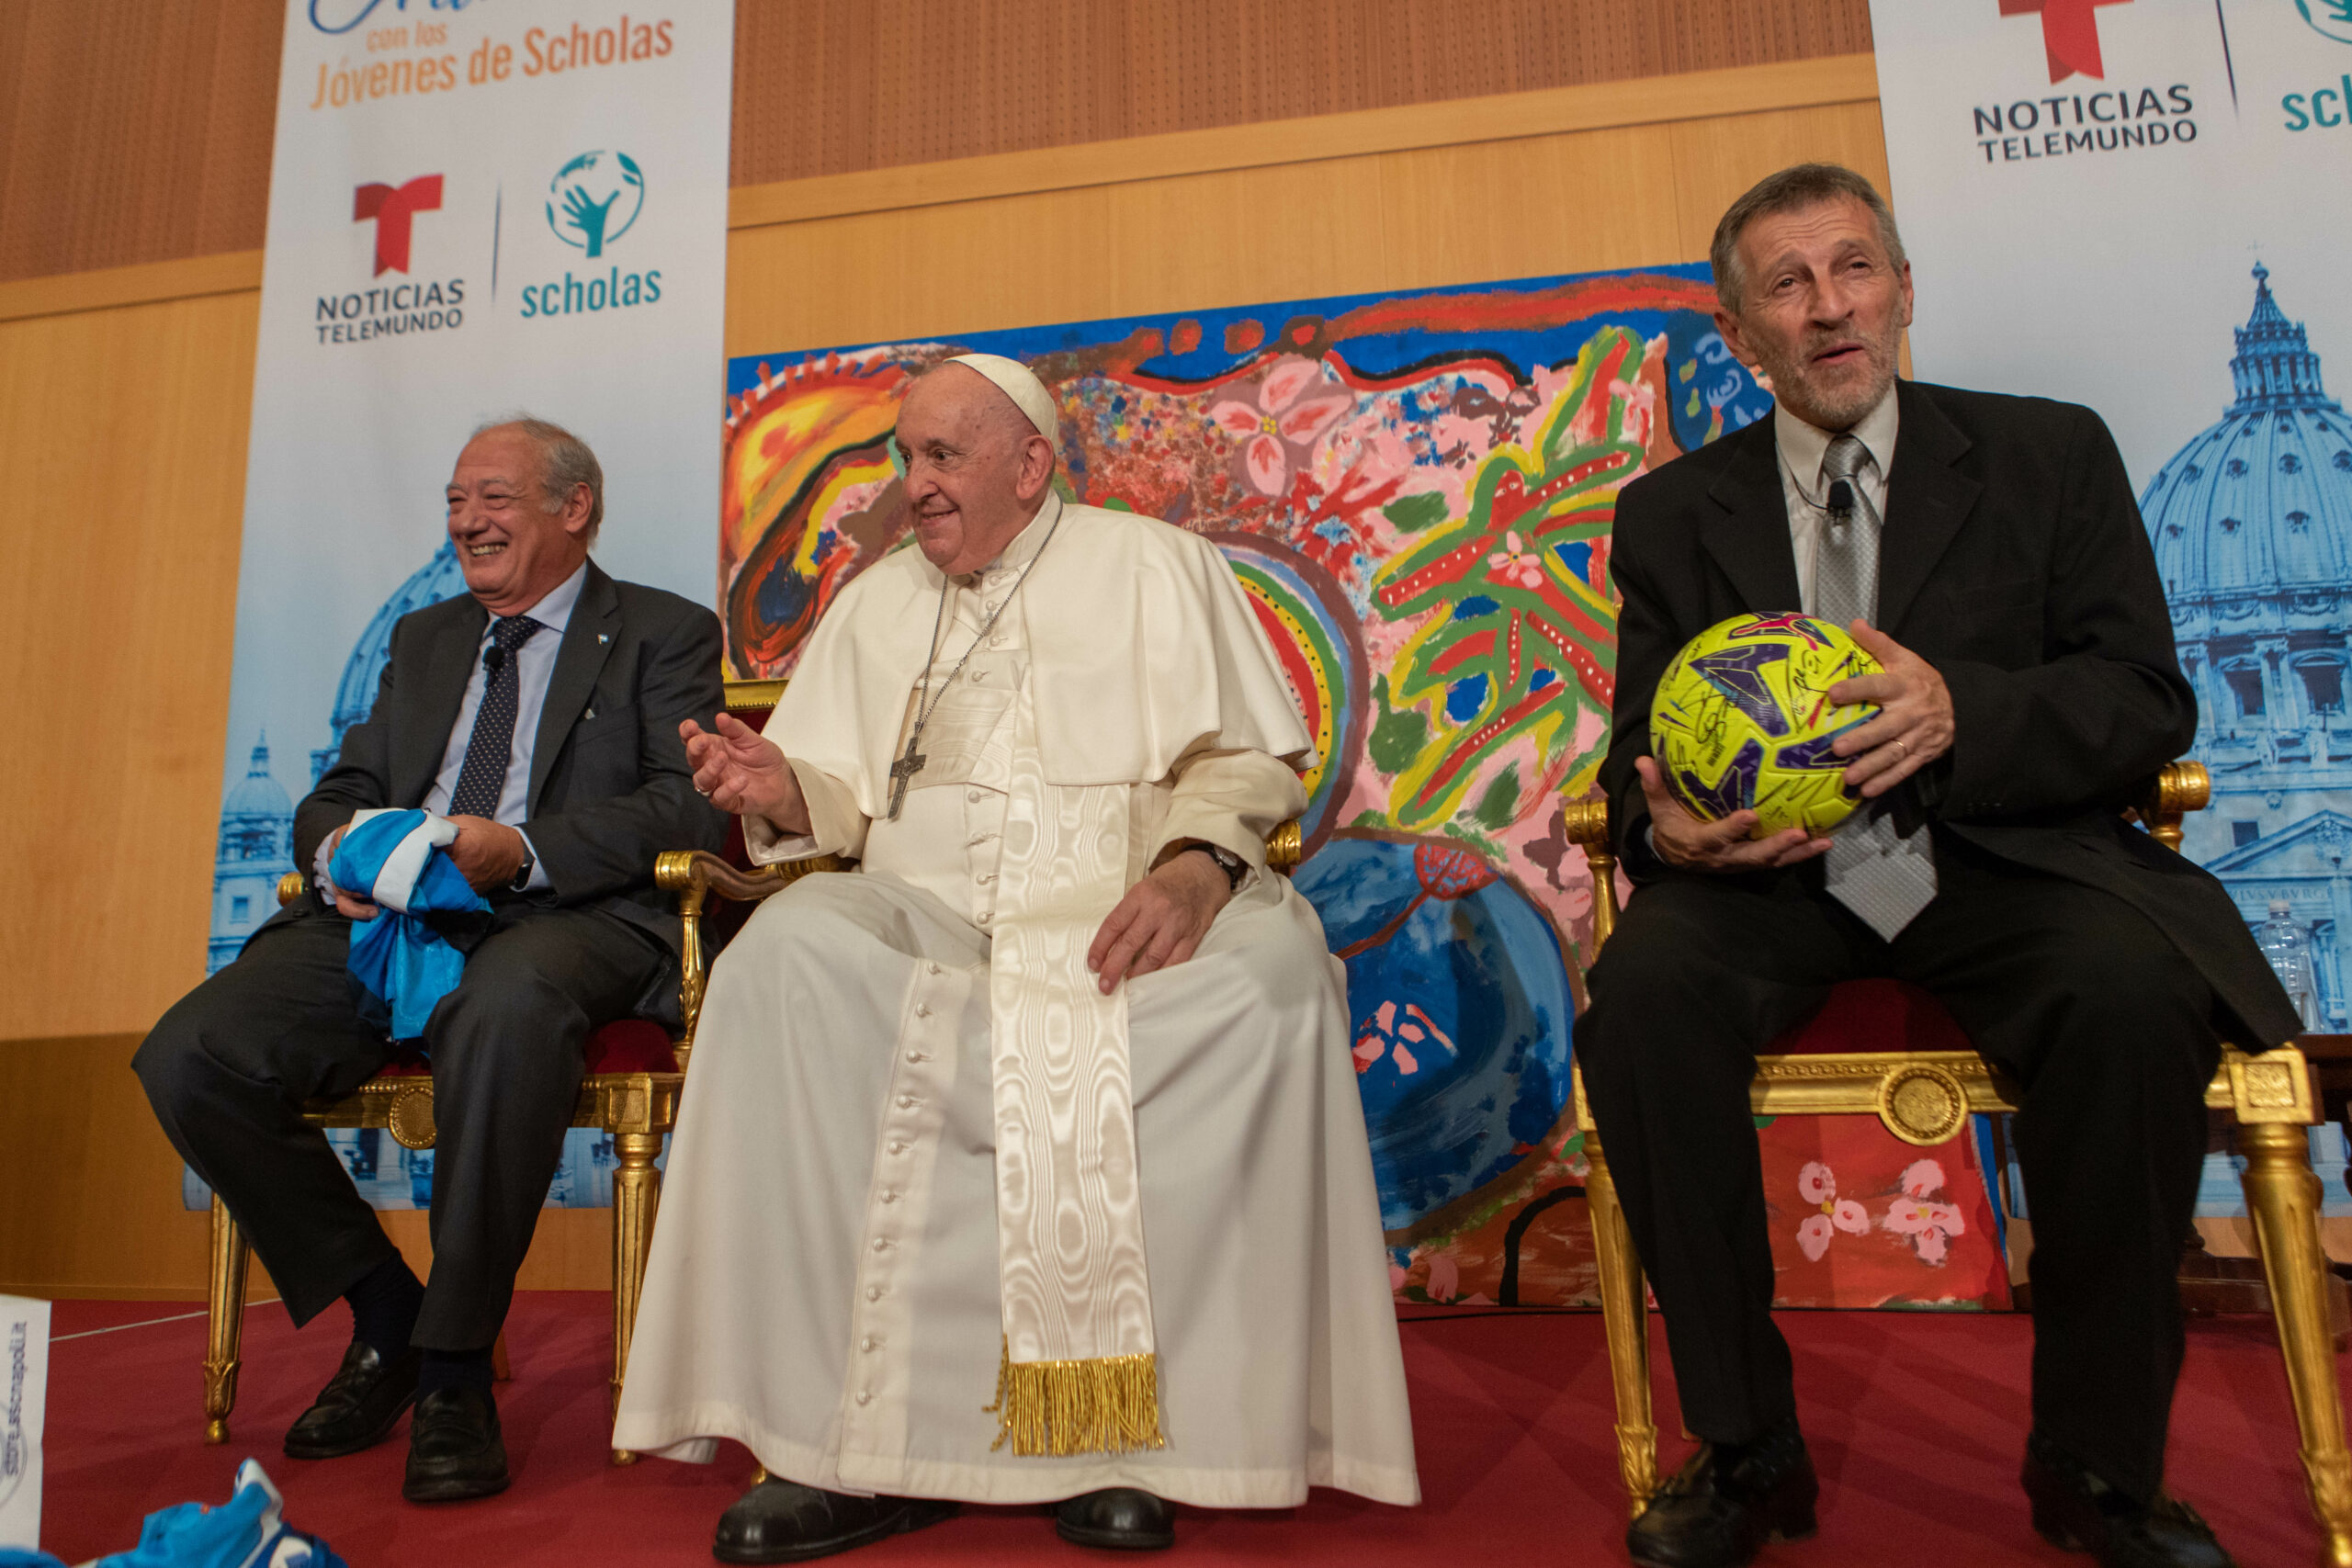 Papa Francesco e Scholas Occurrentes: l’Italia in prima fila a sostegno dei progetti educativi